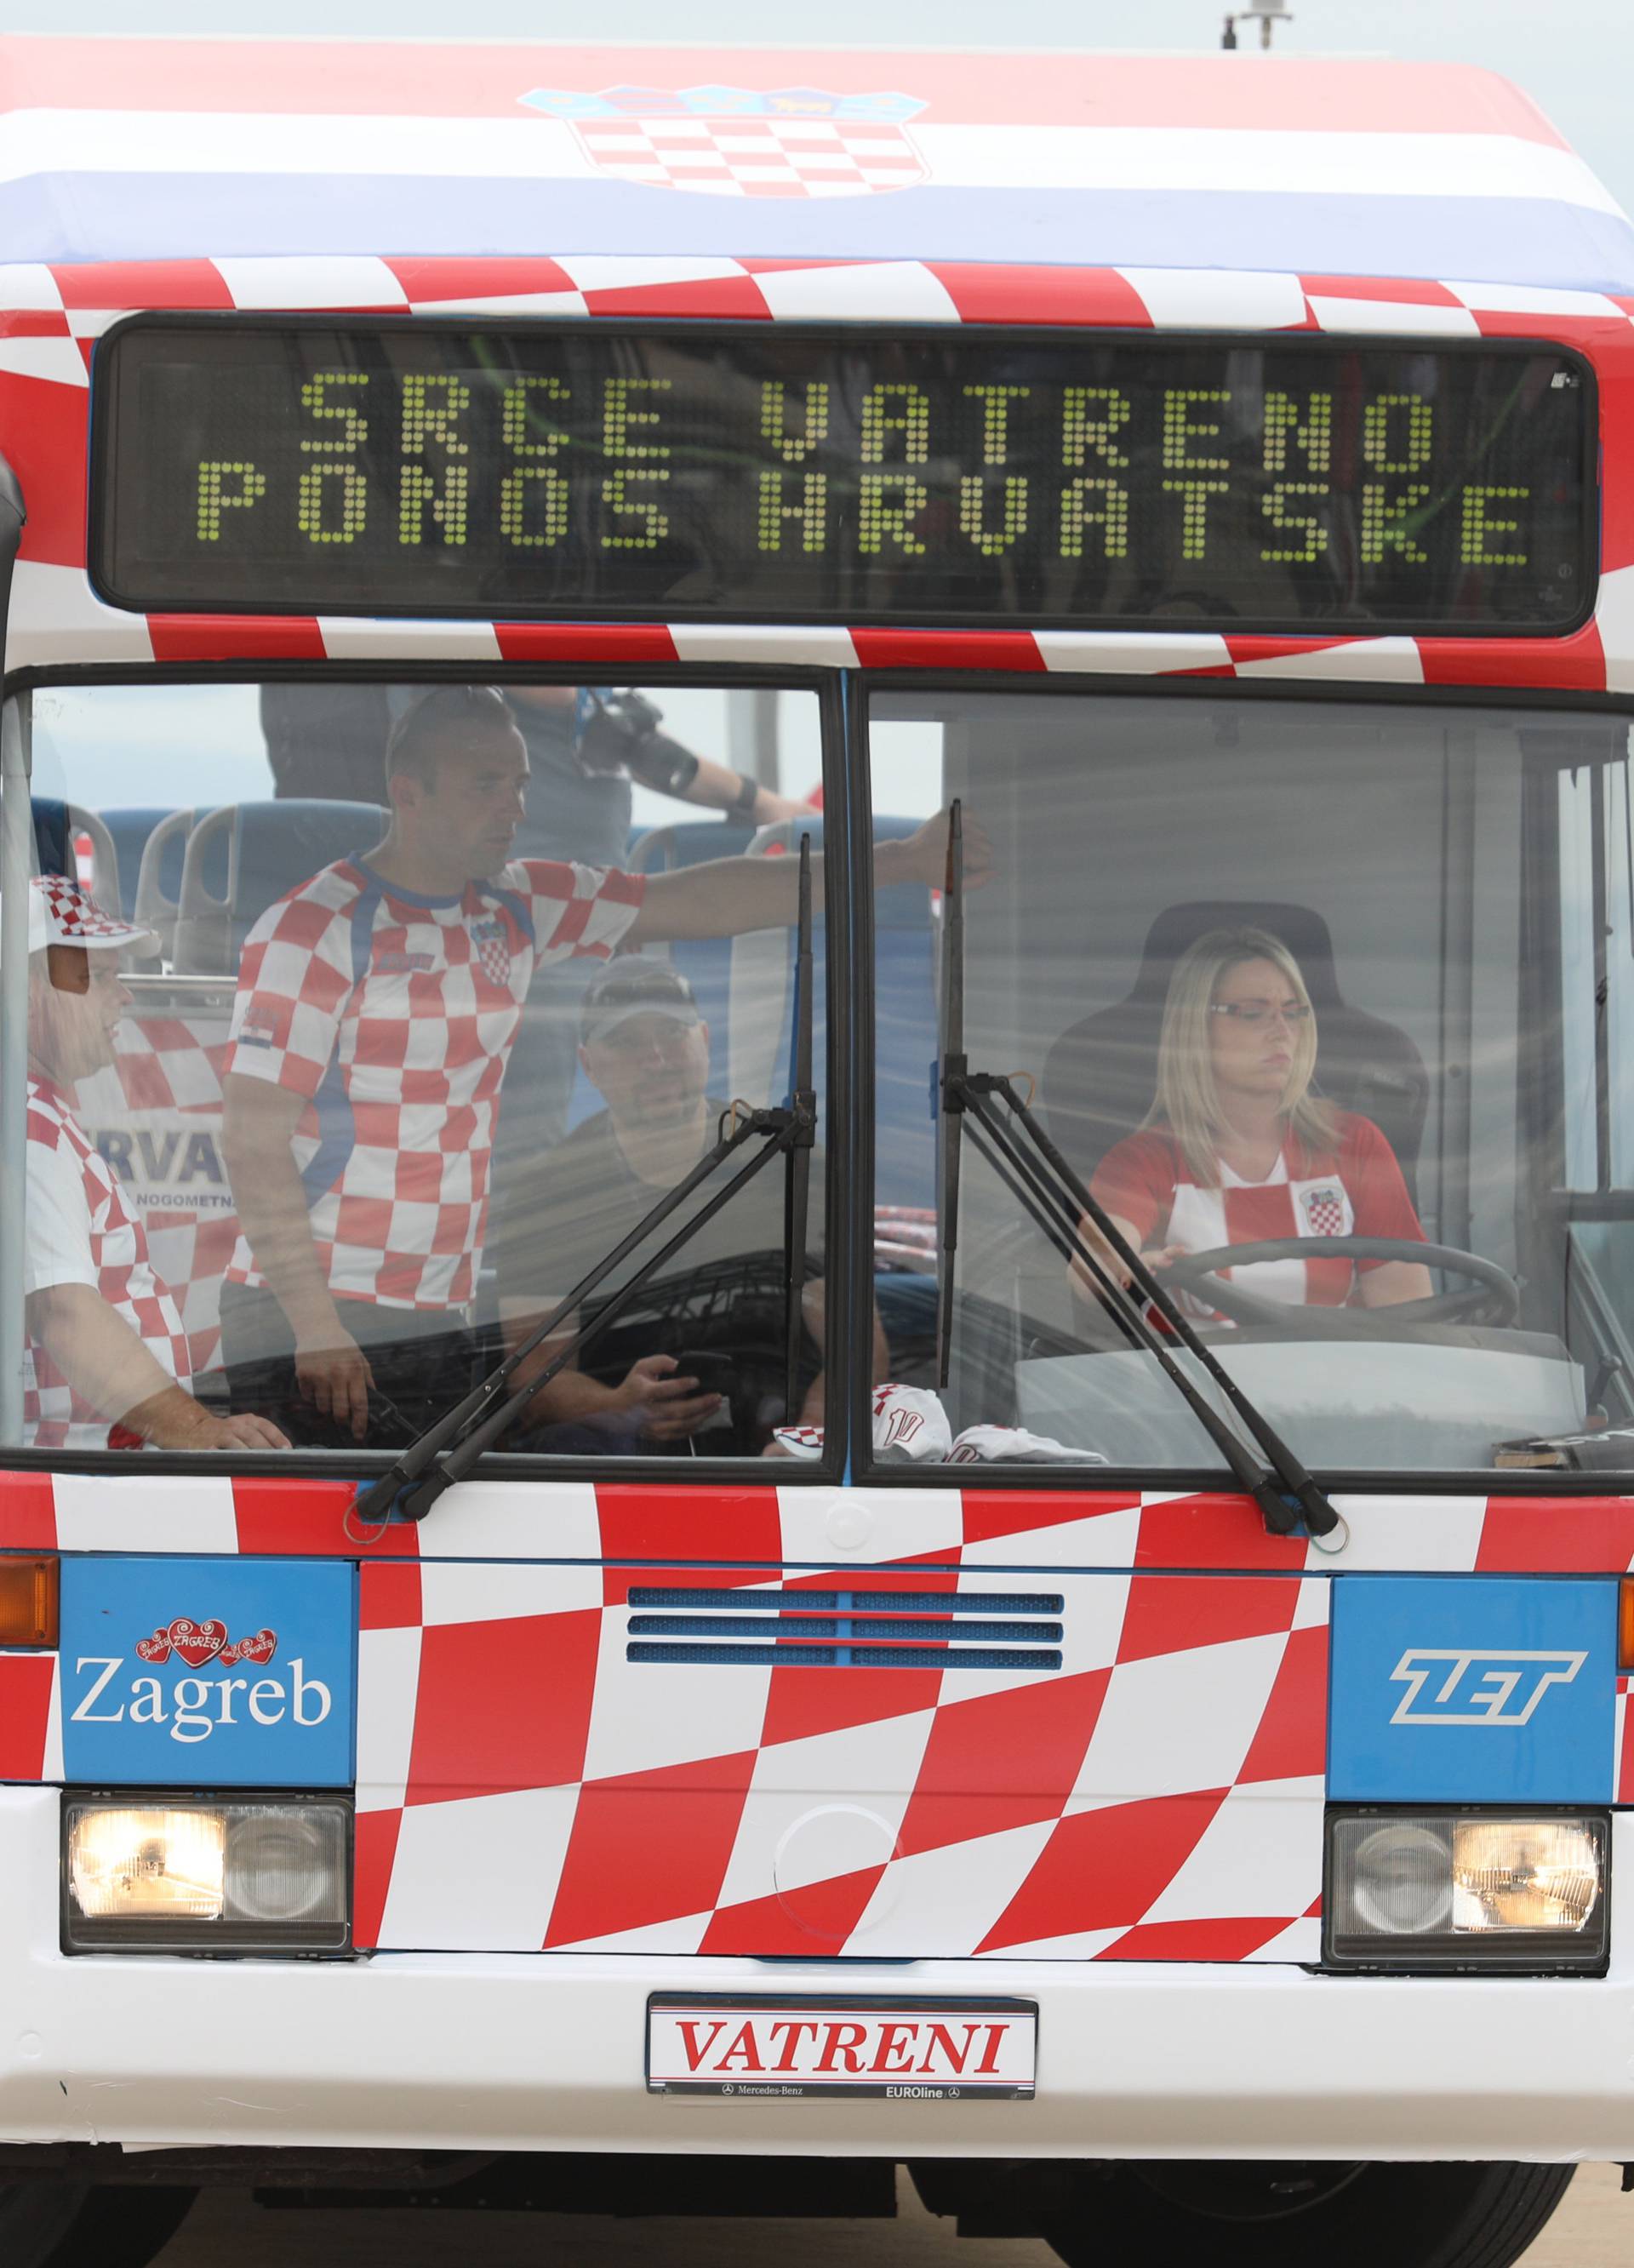 Za povijest! Vatrene u Zagrebu dočekalo čak pola milijuna ljudi